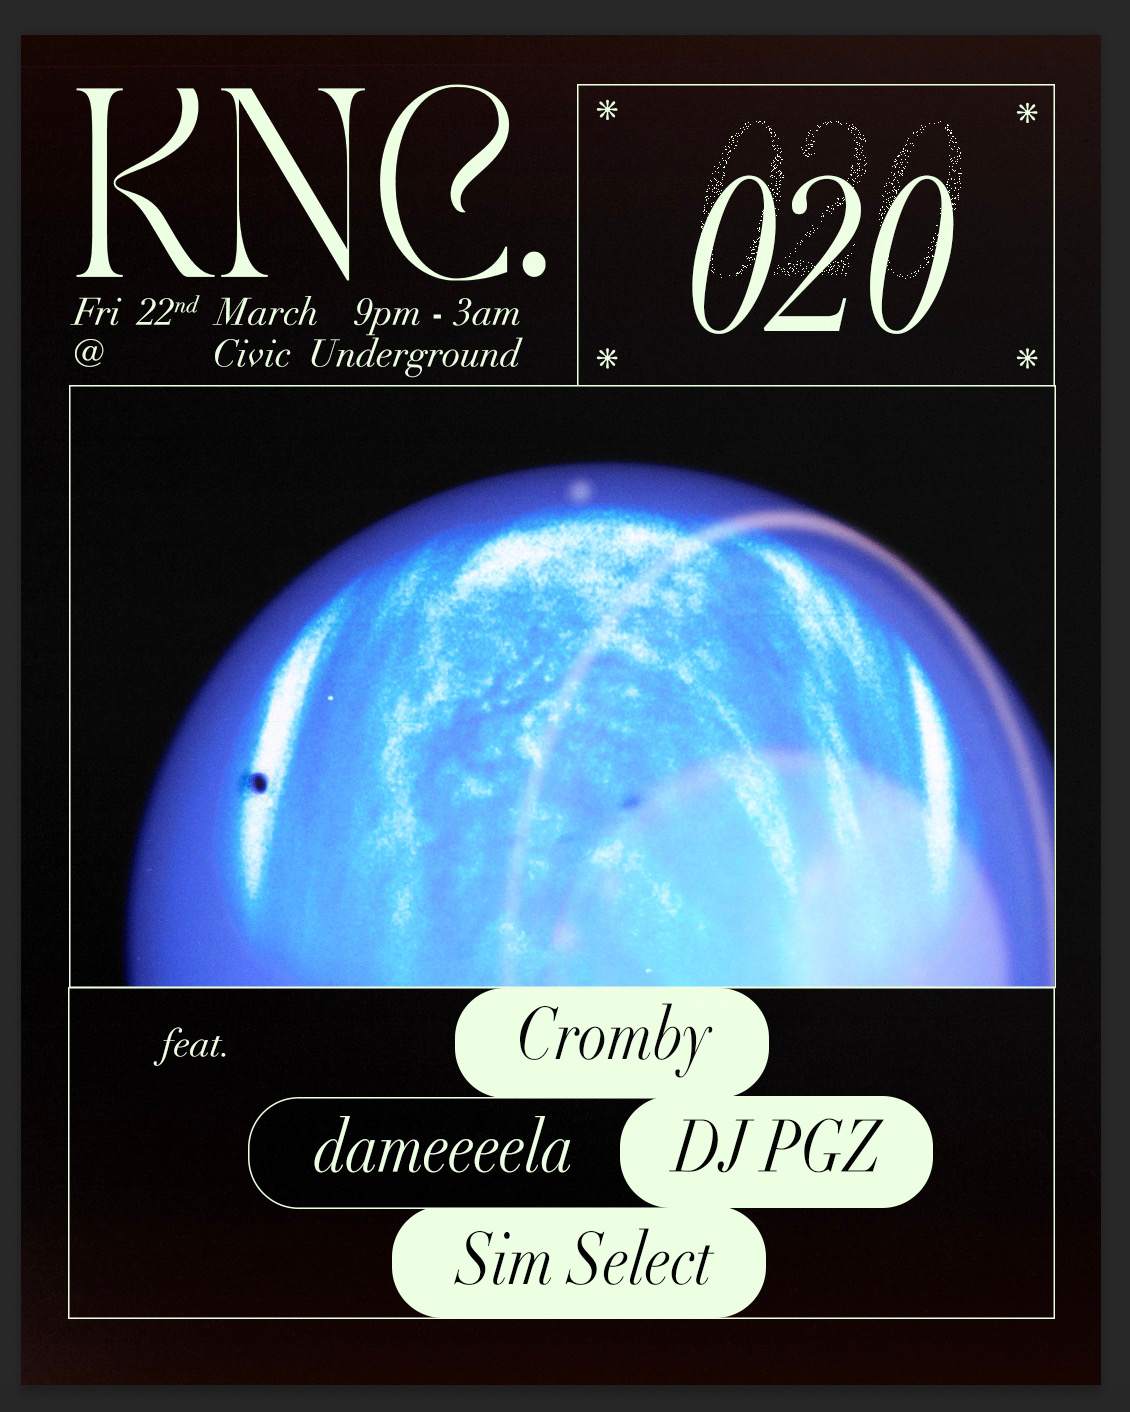 KNC. 020 with Cromby, dameeeela, dj pgz - Página trasera